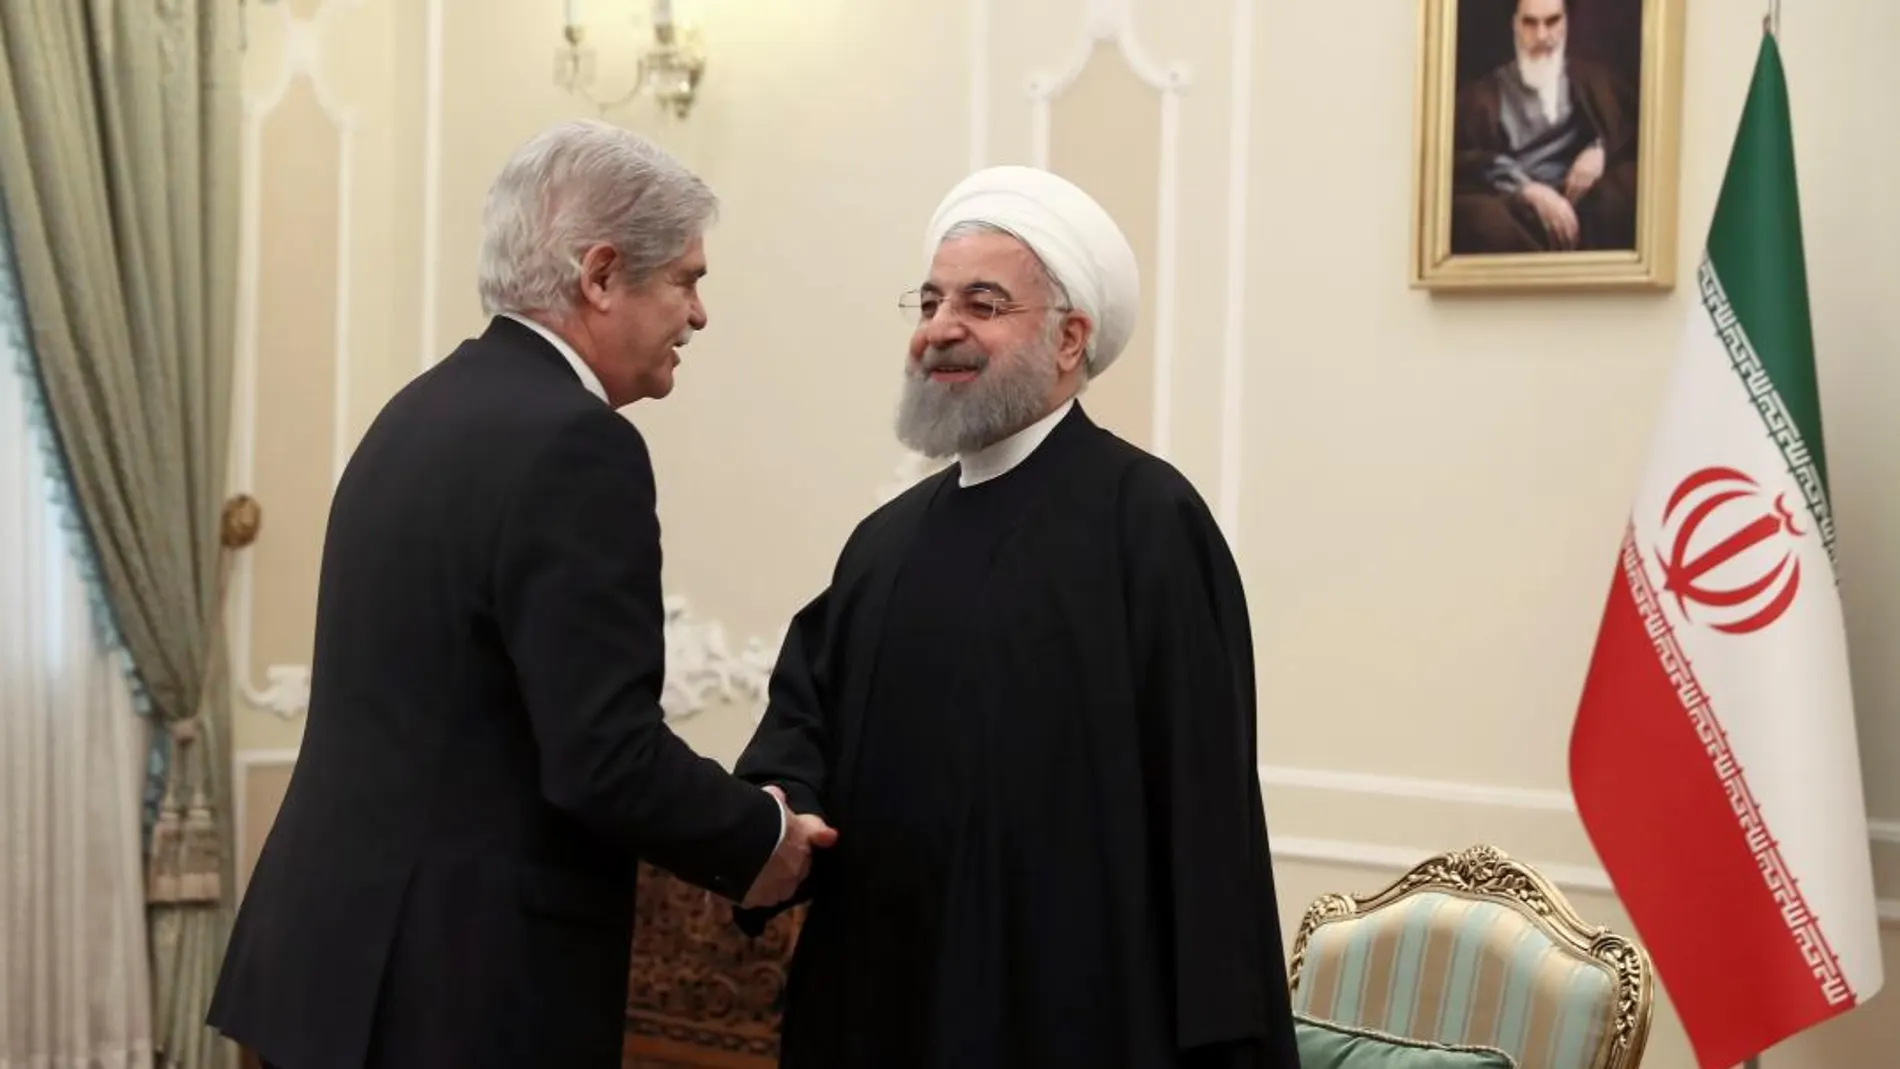 El ministro de Asuntos Exteriores, Alfonso Dastis, durante la entrevista que mantuvo hoy en Teheran con el presidente iraní, Hasán Rouhaní